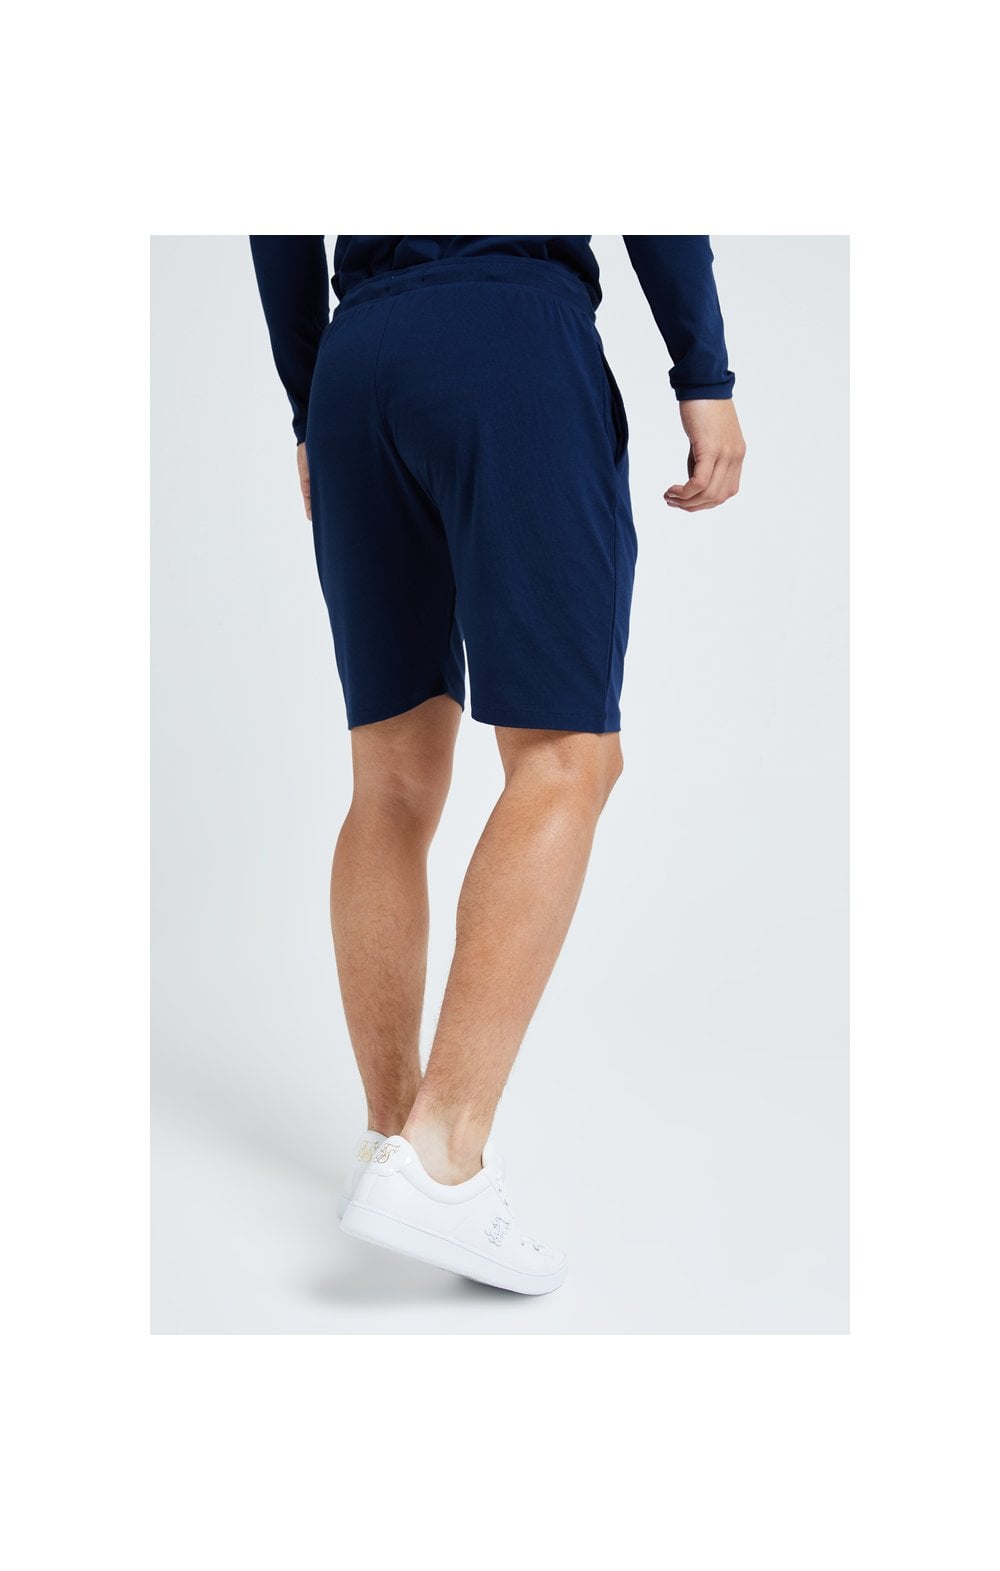 Illusive London Core Jersey Shorts - Navy (4)